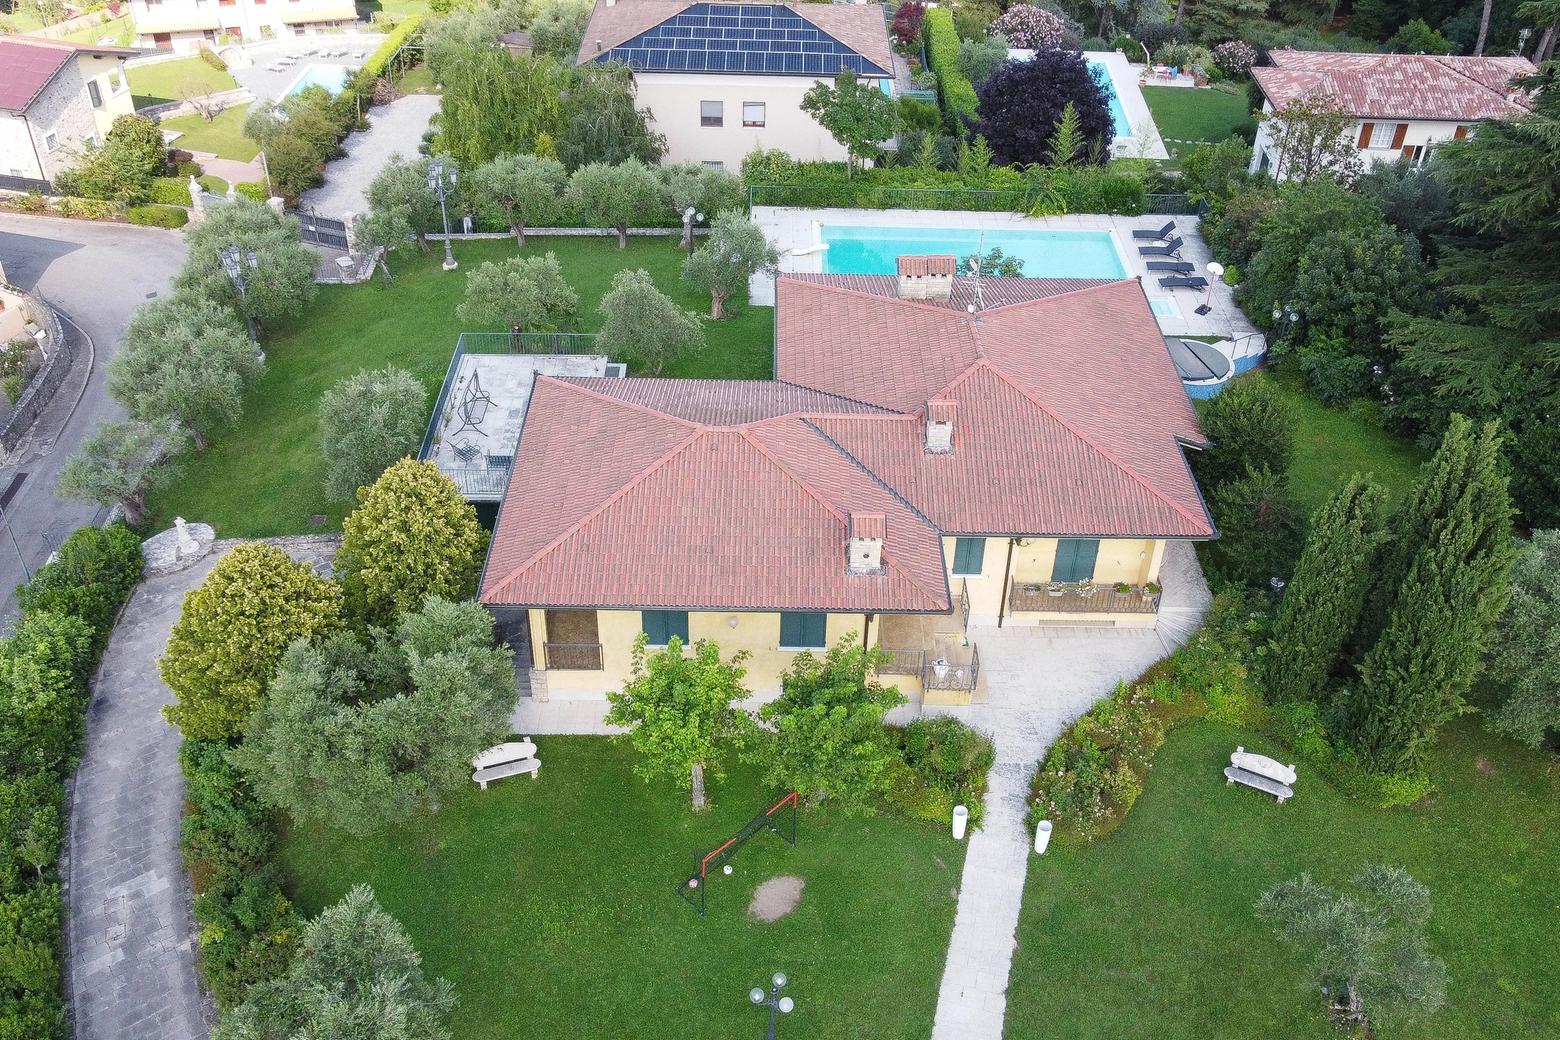 La villa della famiglia Bozzoli a Soiano, sulla sponda bresciana del Garda